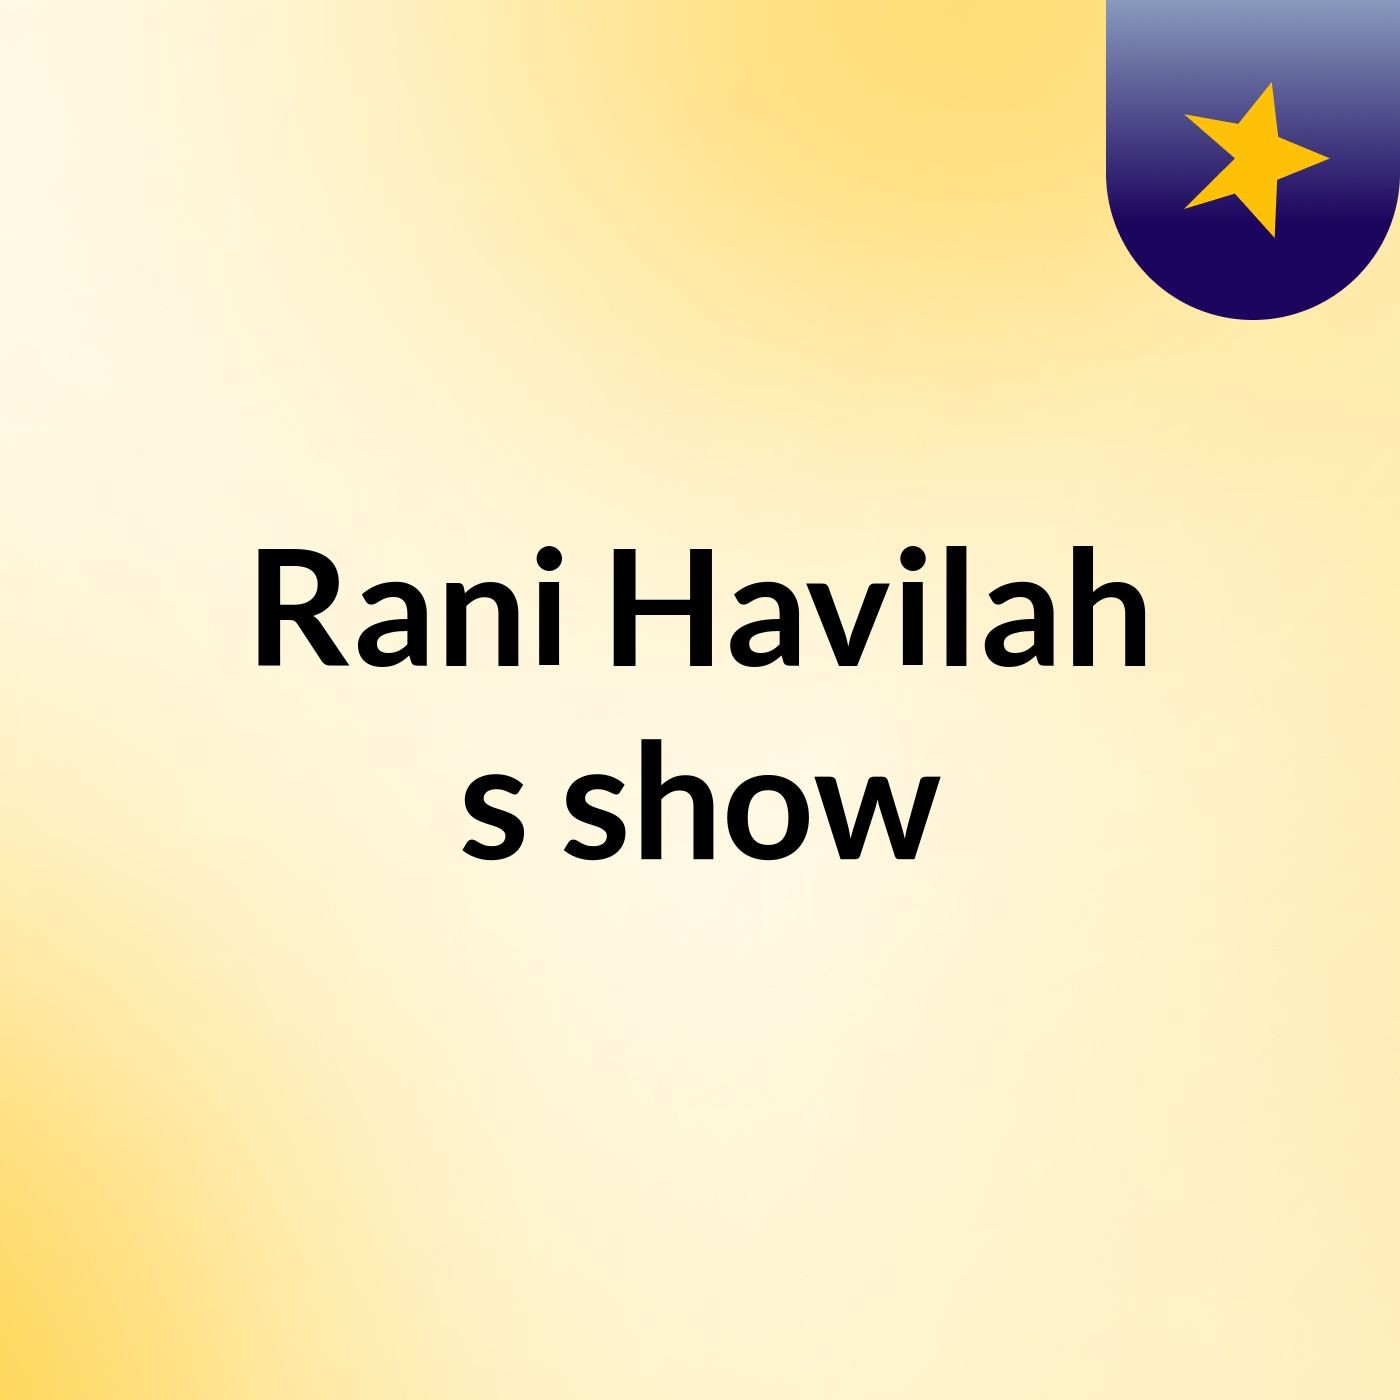 Rani Havilah's show